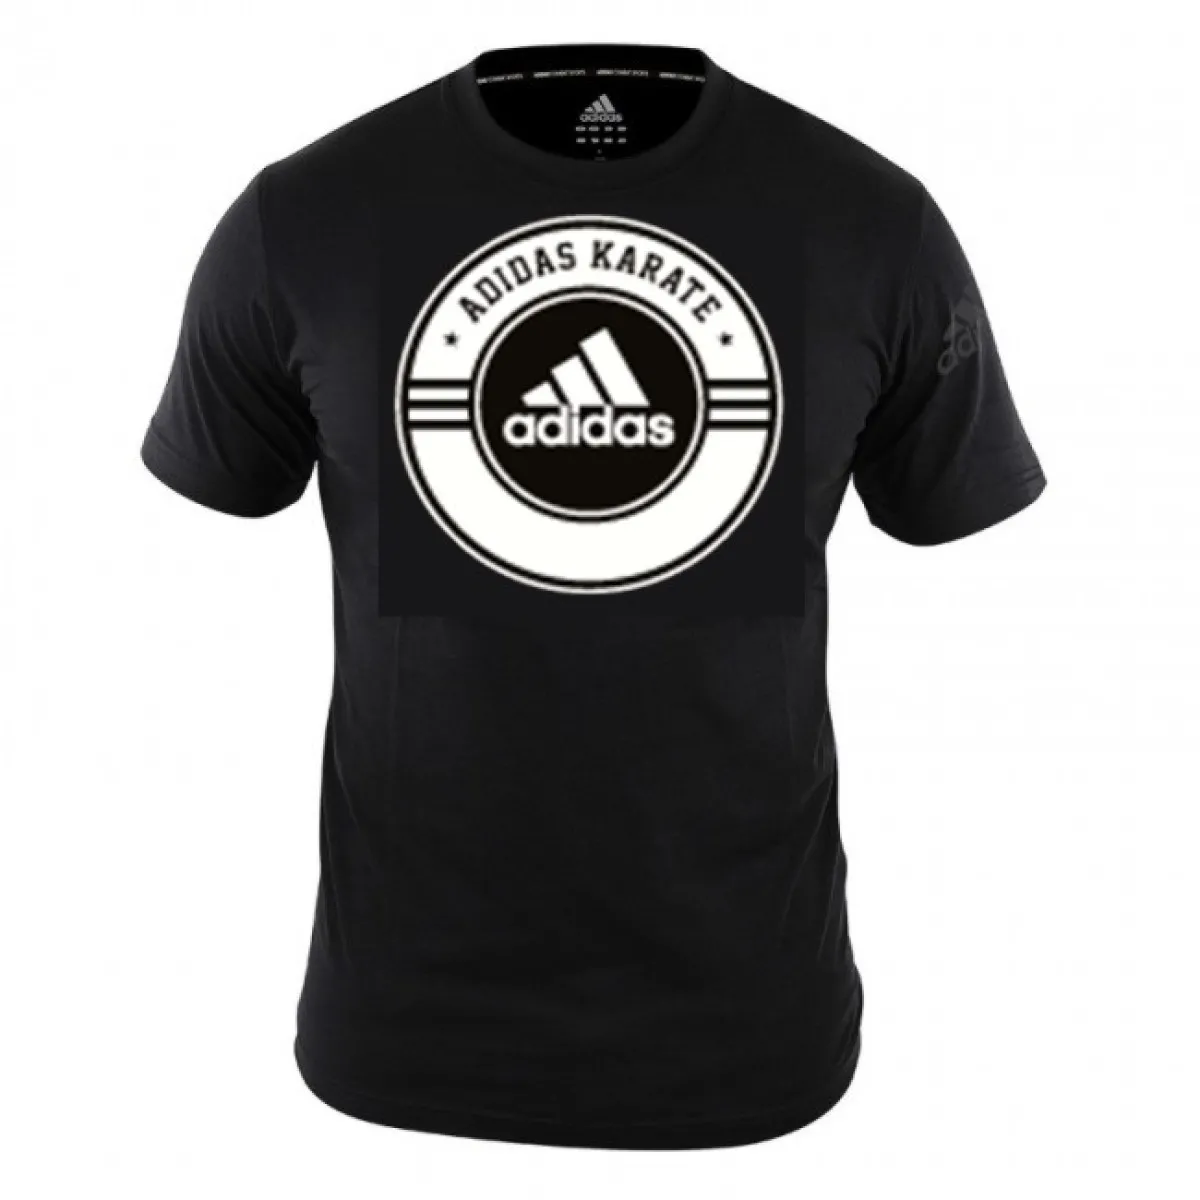 adidas Combat T-Shirt Karate black/white